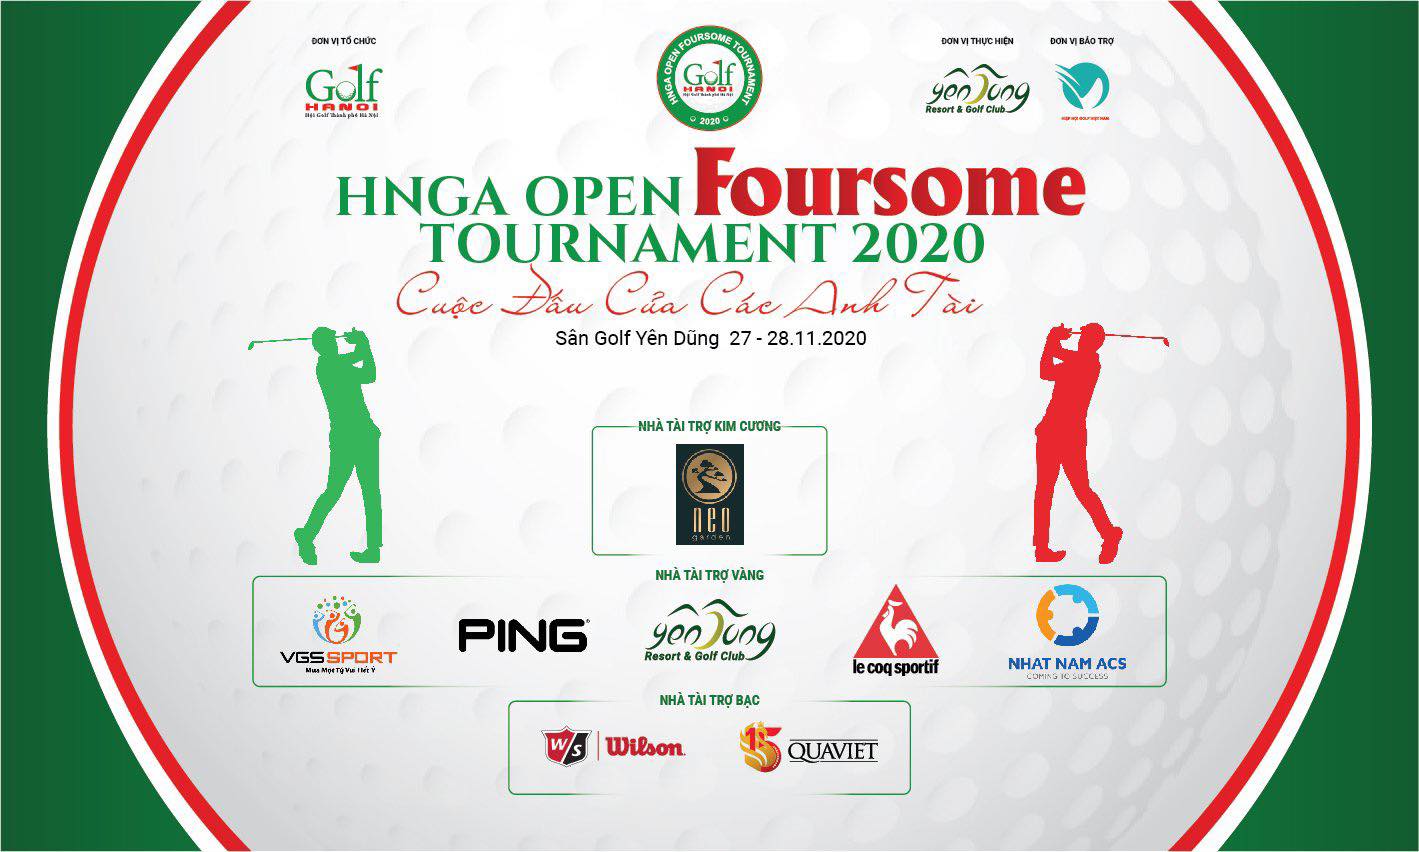 Giảm 50% phí tham dự cho golfer dự giải HNGA Open Foursome Tournament 2020 khi đồng bộ mã VGA với ngân hàng số MBbank trên Vhandicap